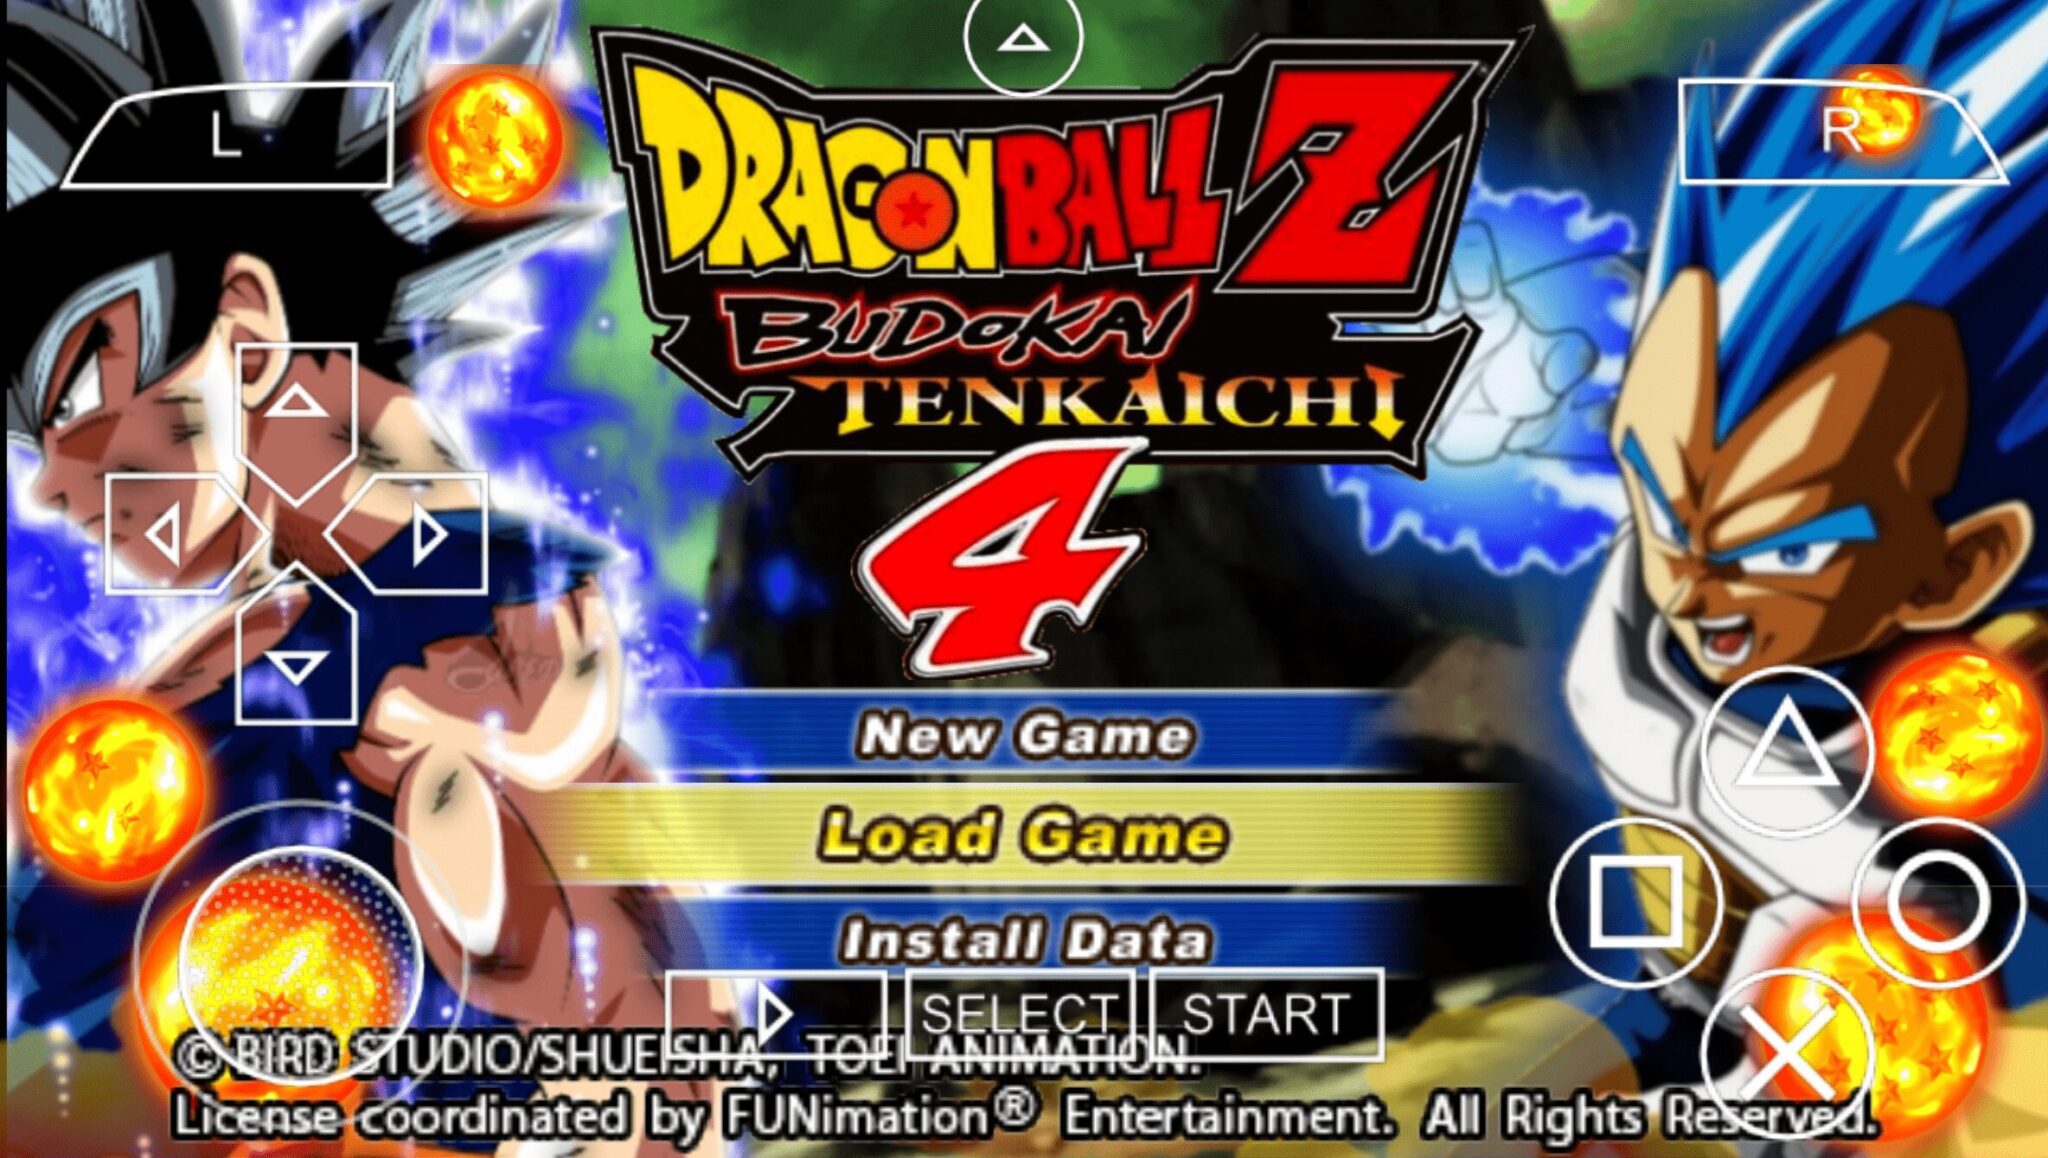 Dragon Ball Z Budokai Tenkaichi 4 Psp Android Evolution Of Games